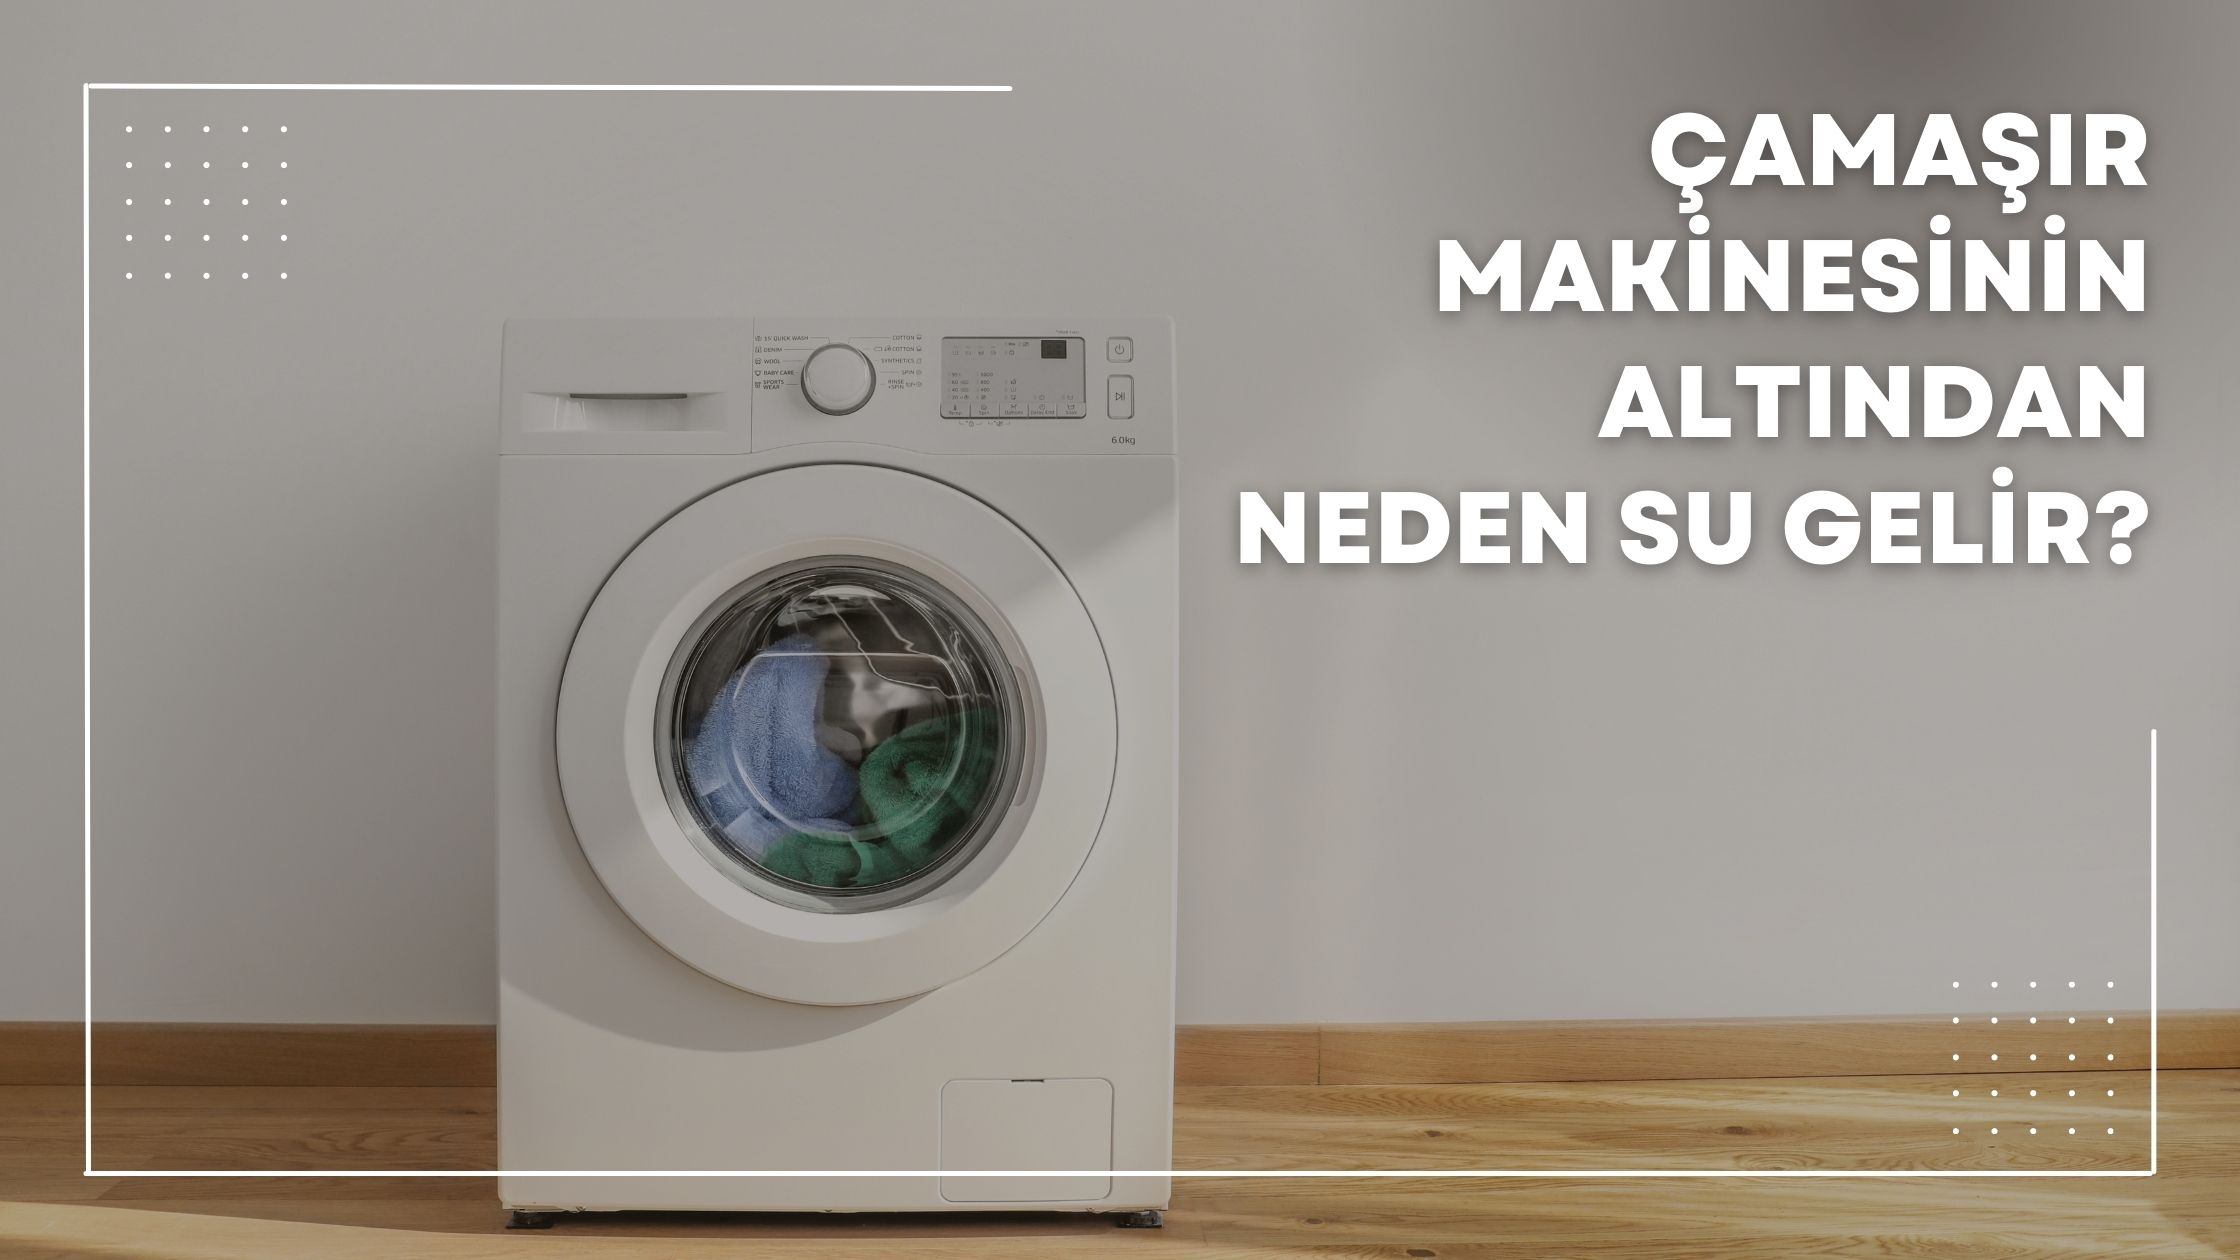 Çamaşır Makinesinin Altından Neden Su Gelir?